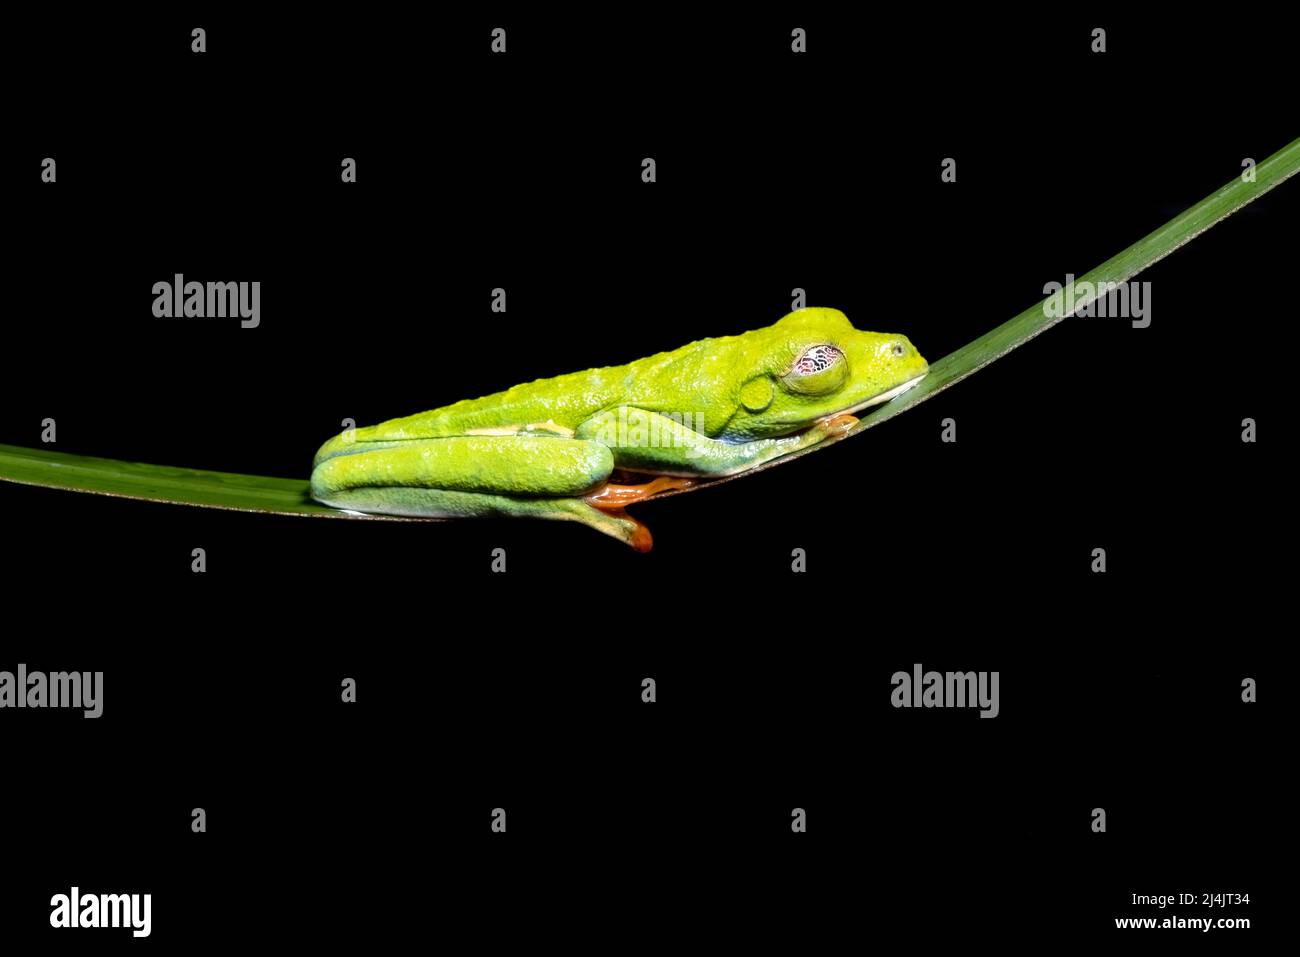 Rana arbórea de ojos rojos (Agalychnis callidyas) durmiendo mostrando una membrana nictitadora - Boca Tapada, Costa Rica [Muestra controlada] Foto de stock